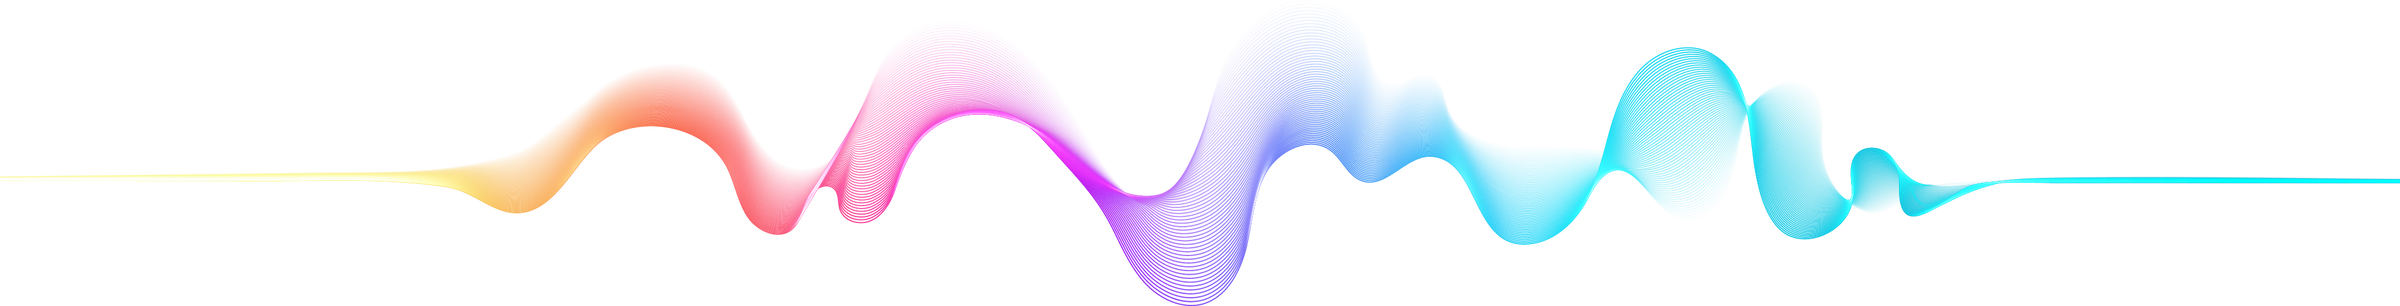 Sound Wave Illustration